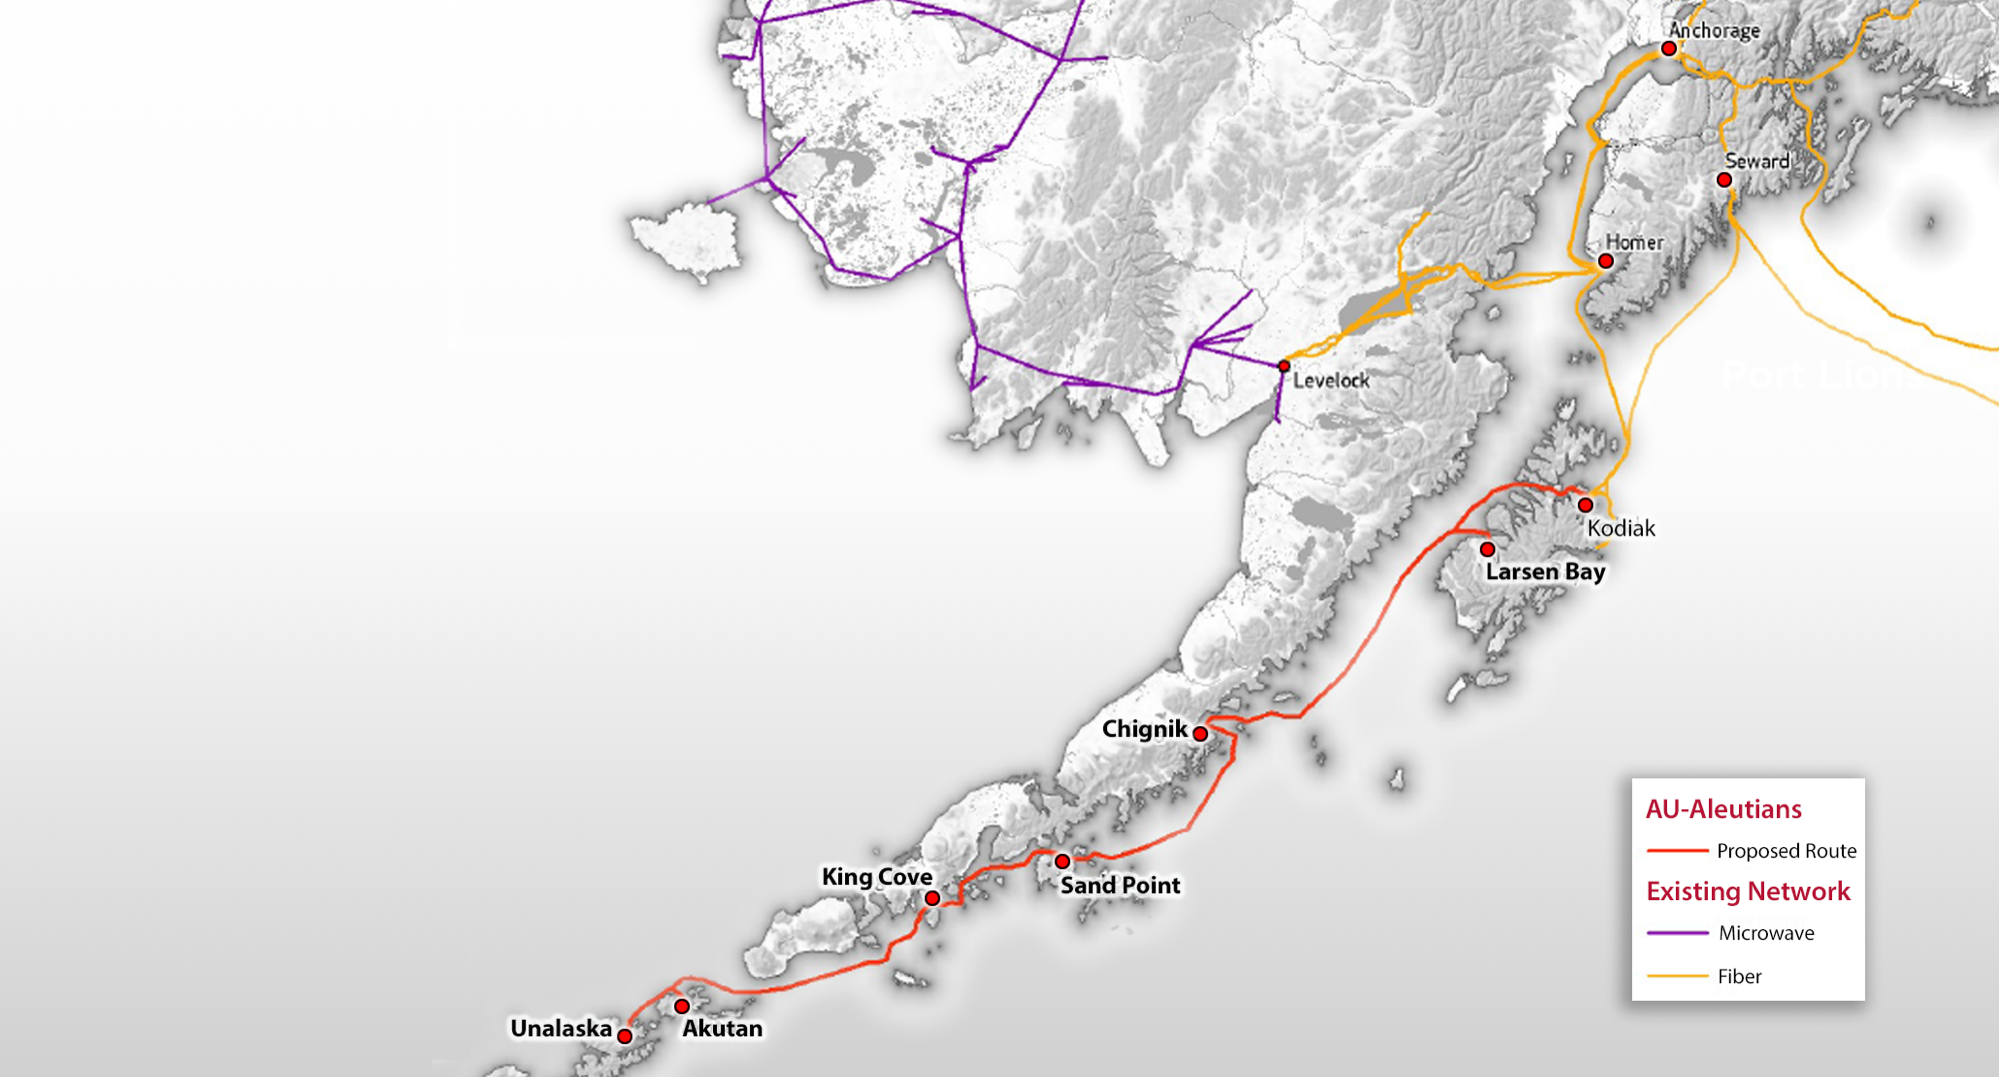 Aleutians fiber route map